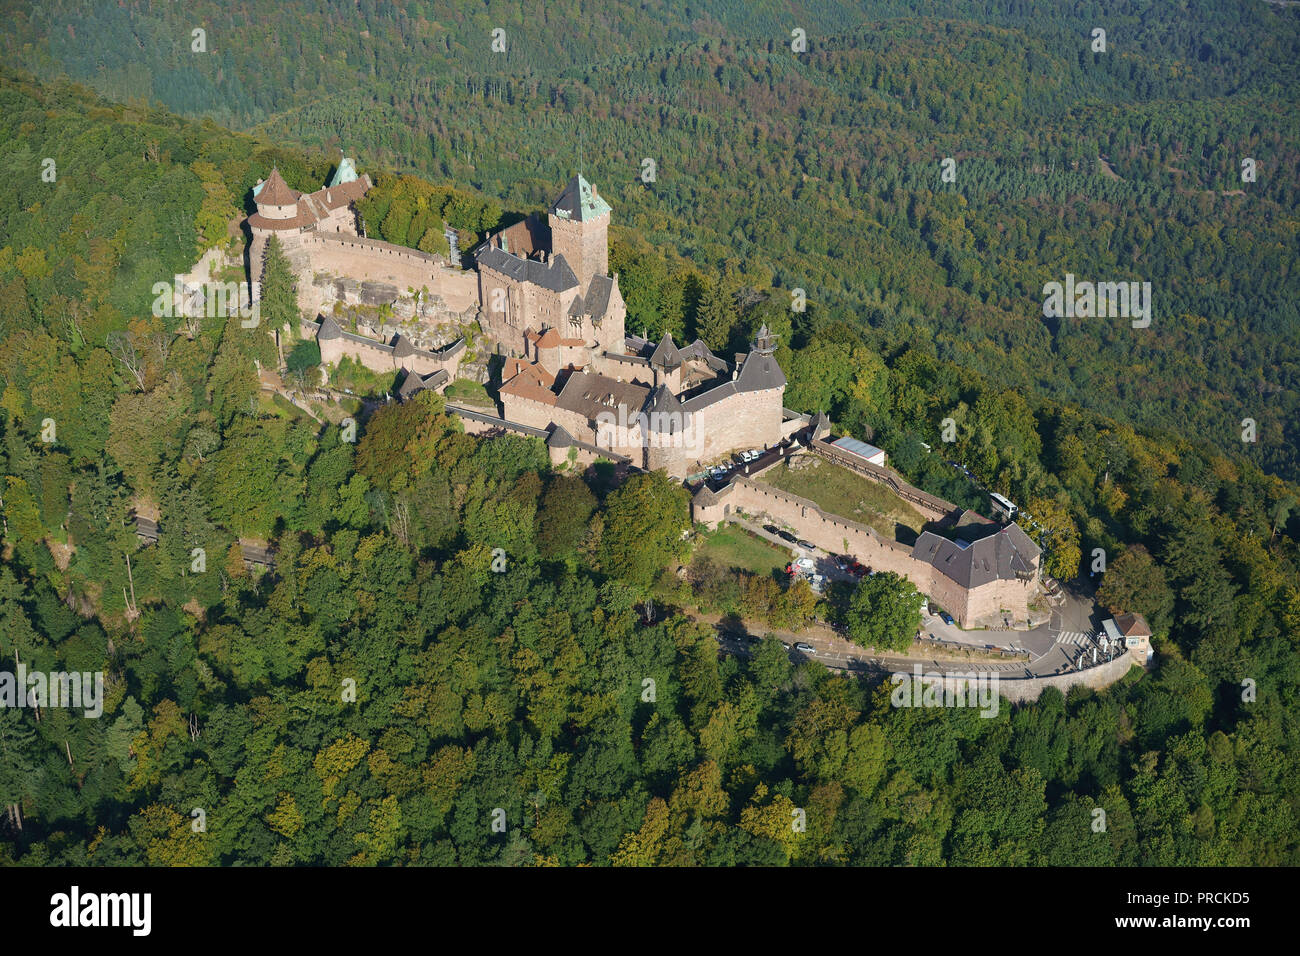 VISTA AEREA. Arenaria rosa castello medievale su una cima boscosa di montagna. Castello di Haut-Koenigsbourg, Orschwiller, basso Reno, Alsazia, Grand Est, Francia. Foto Stock